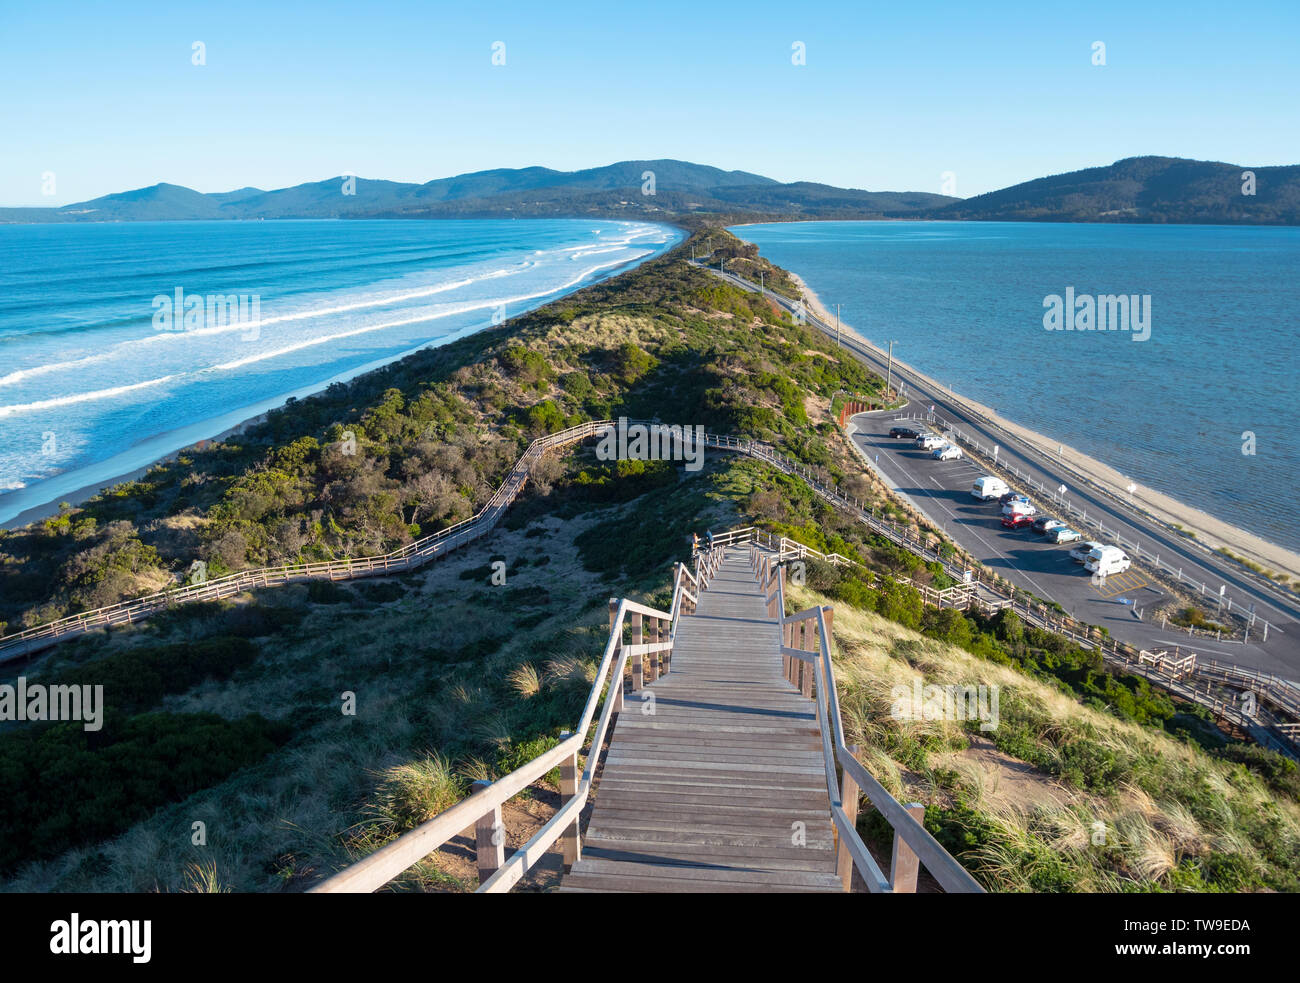 Bruny Island in Tasmania è una corsa popolare destinazione turistica. Il collo è una sottile striscia di terra che unisce il nord e il sud dell'isola. Foto Stock